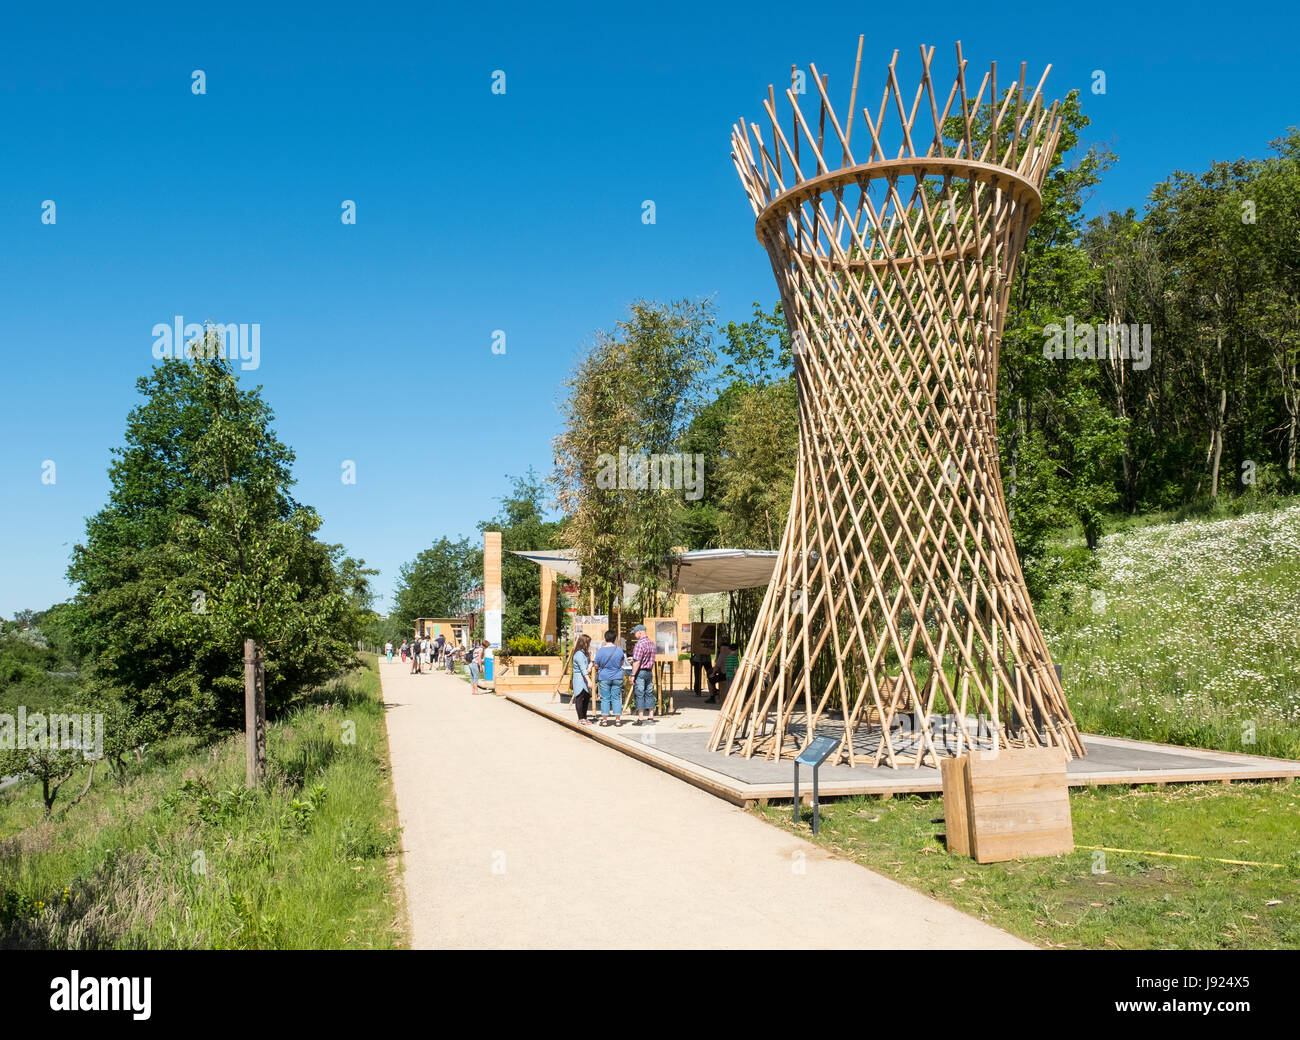 Bambus-Struktur auf Terrasse am IGA 2017 internationales Gartenfestival (internationale Garten Ausstellung) in Berlin, Deutschland Stockfoto